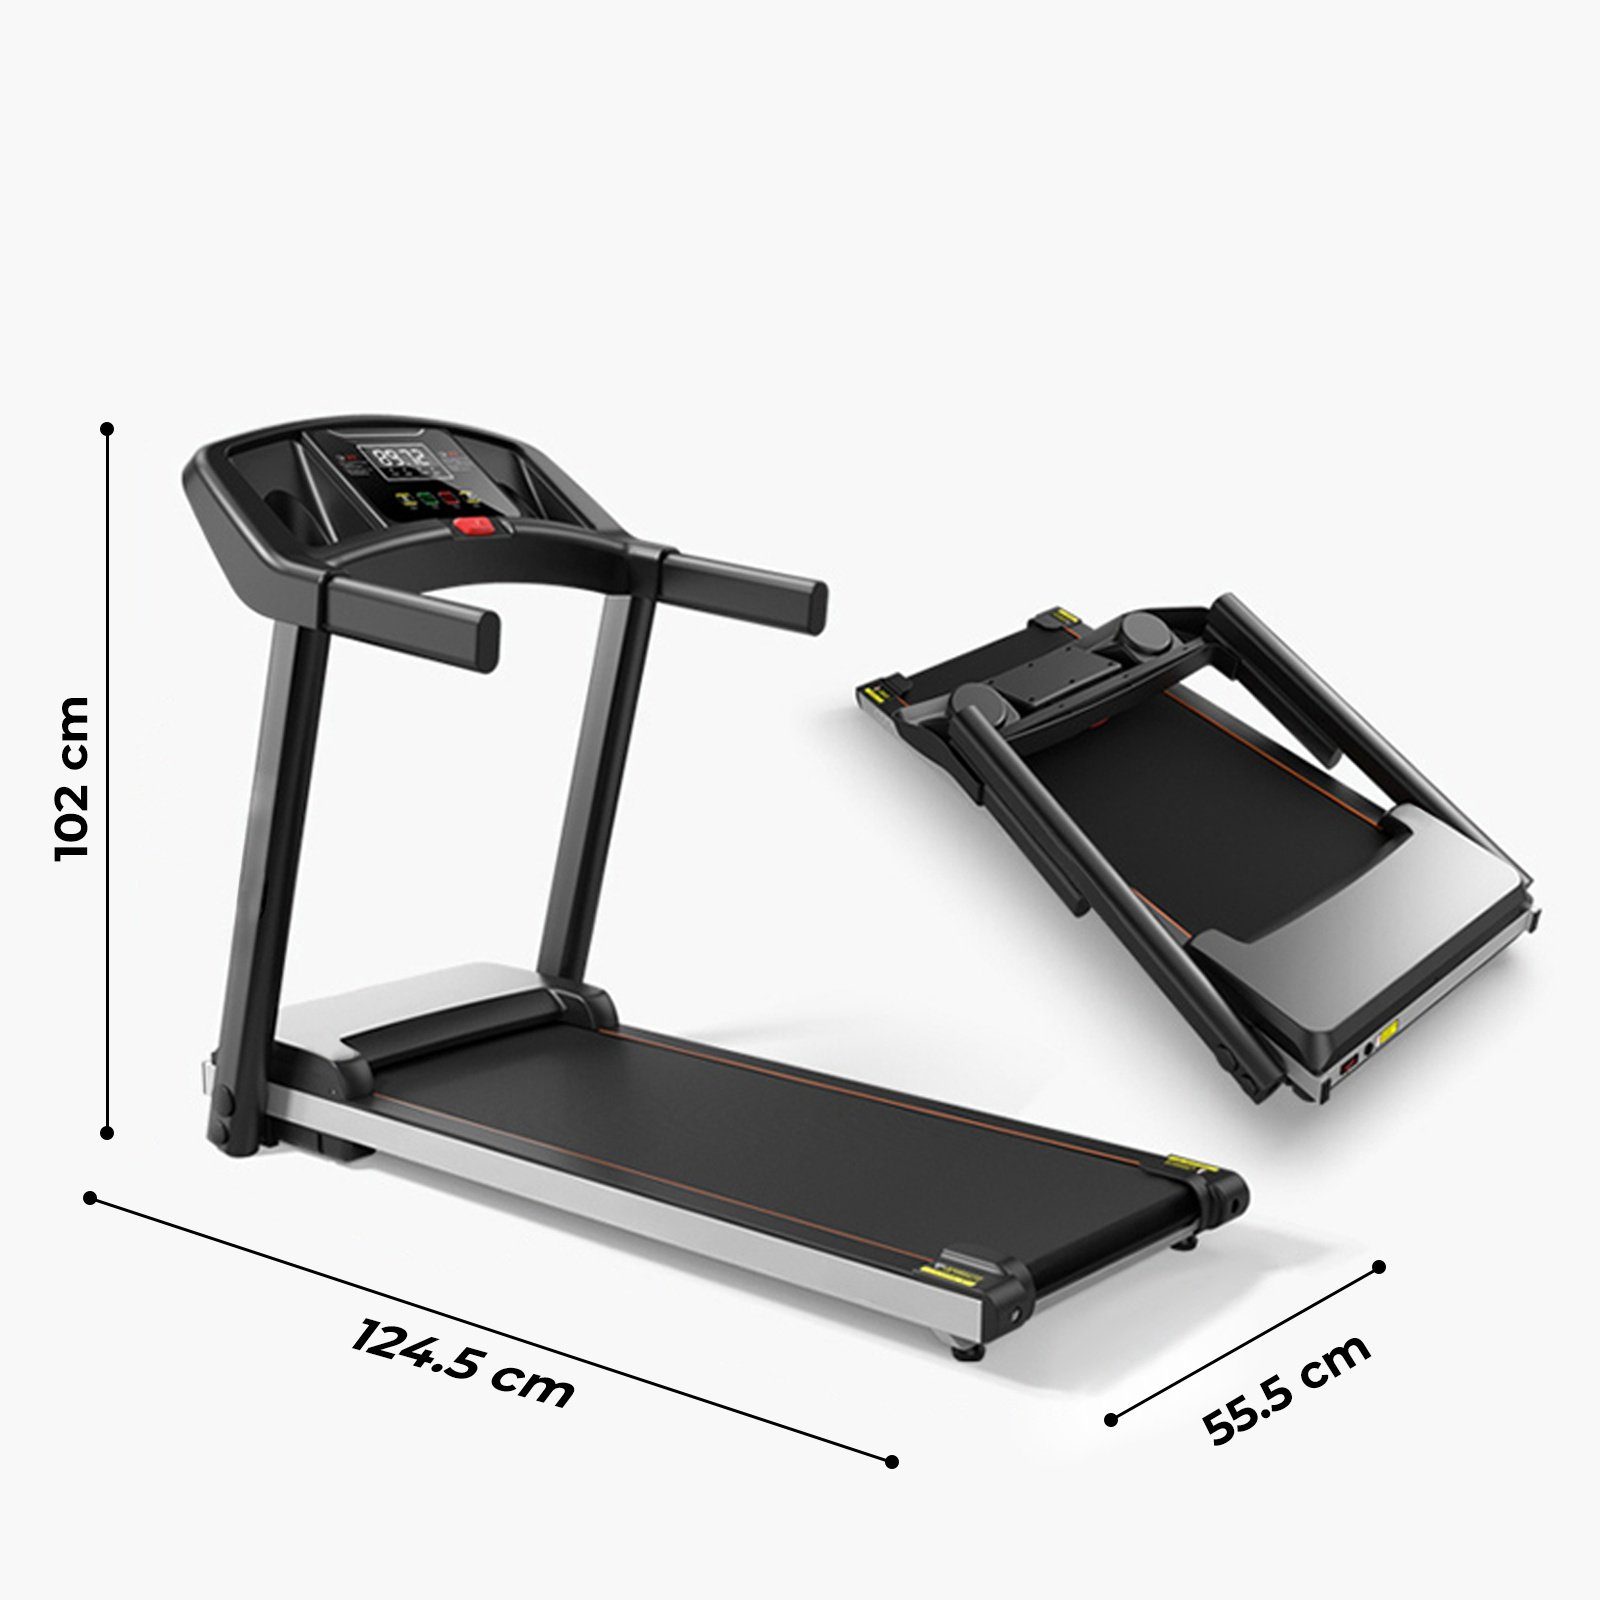 VENDOMNIA Laufband bis (Trainingszeit, Treadmill 1000W, - Distanz, klappbar, elektrisch, Kalorienverbrauch, LCD-Display, Geschwindigkeit), 100x38cm - 6Km/h Lauffläche